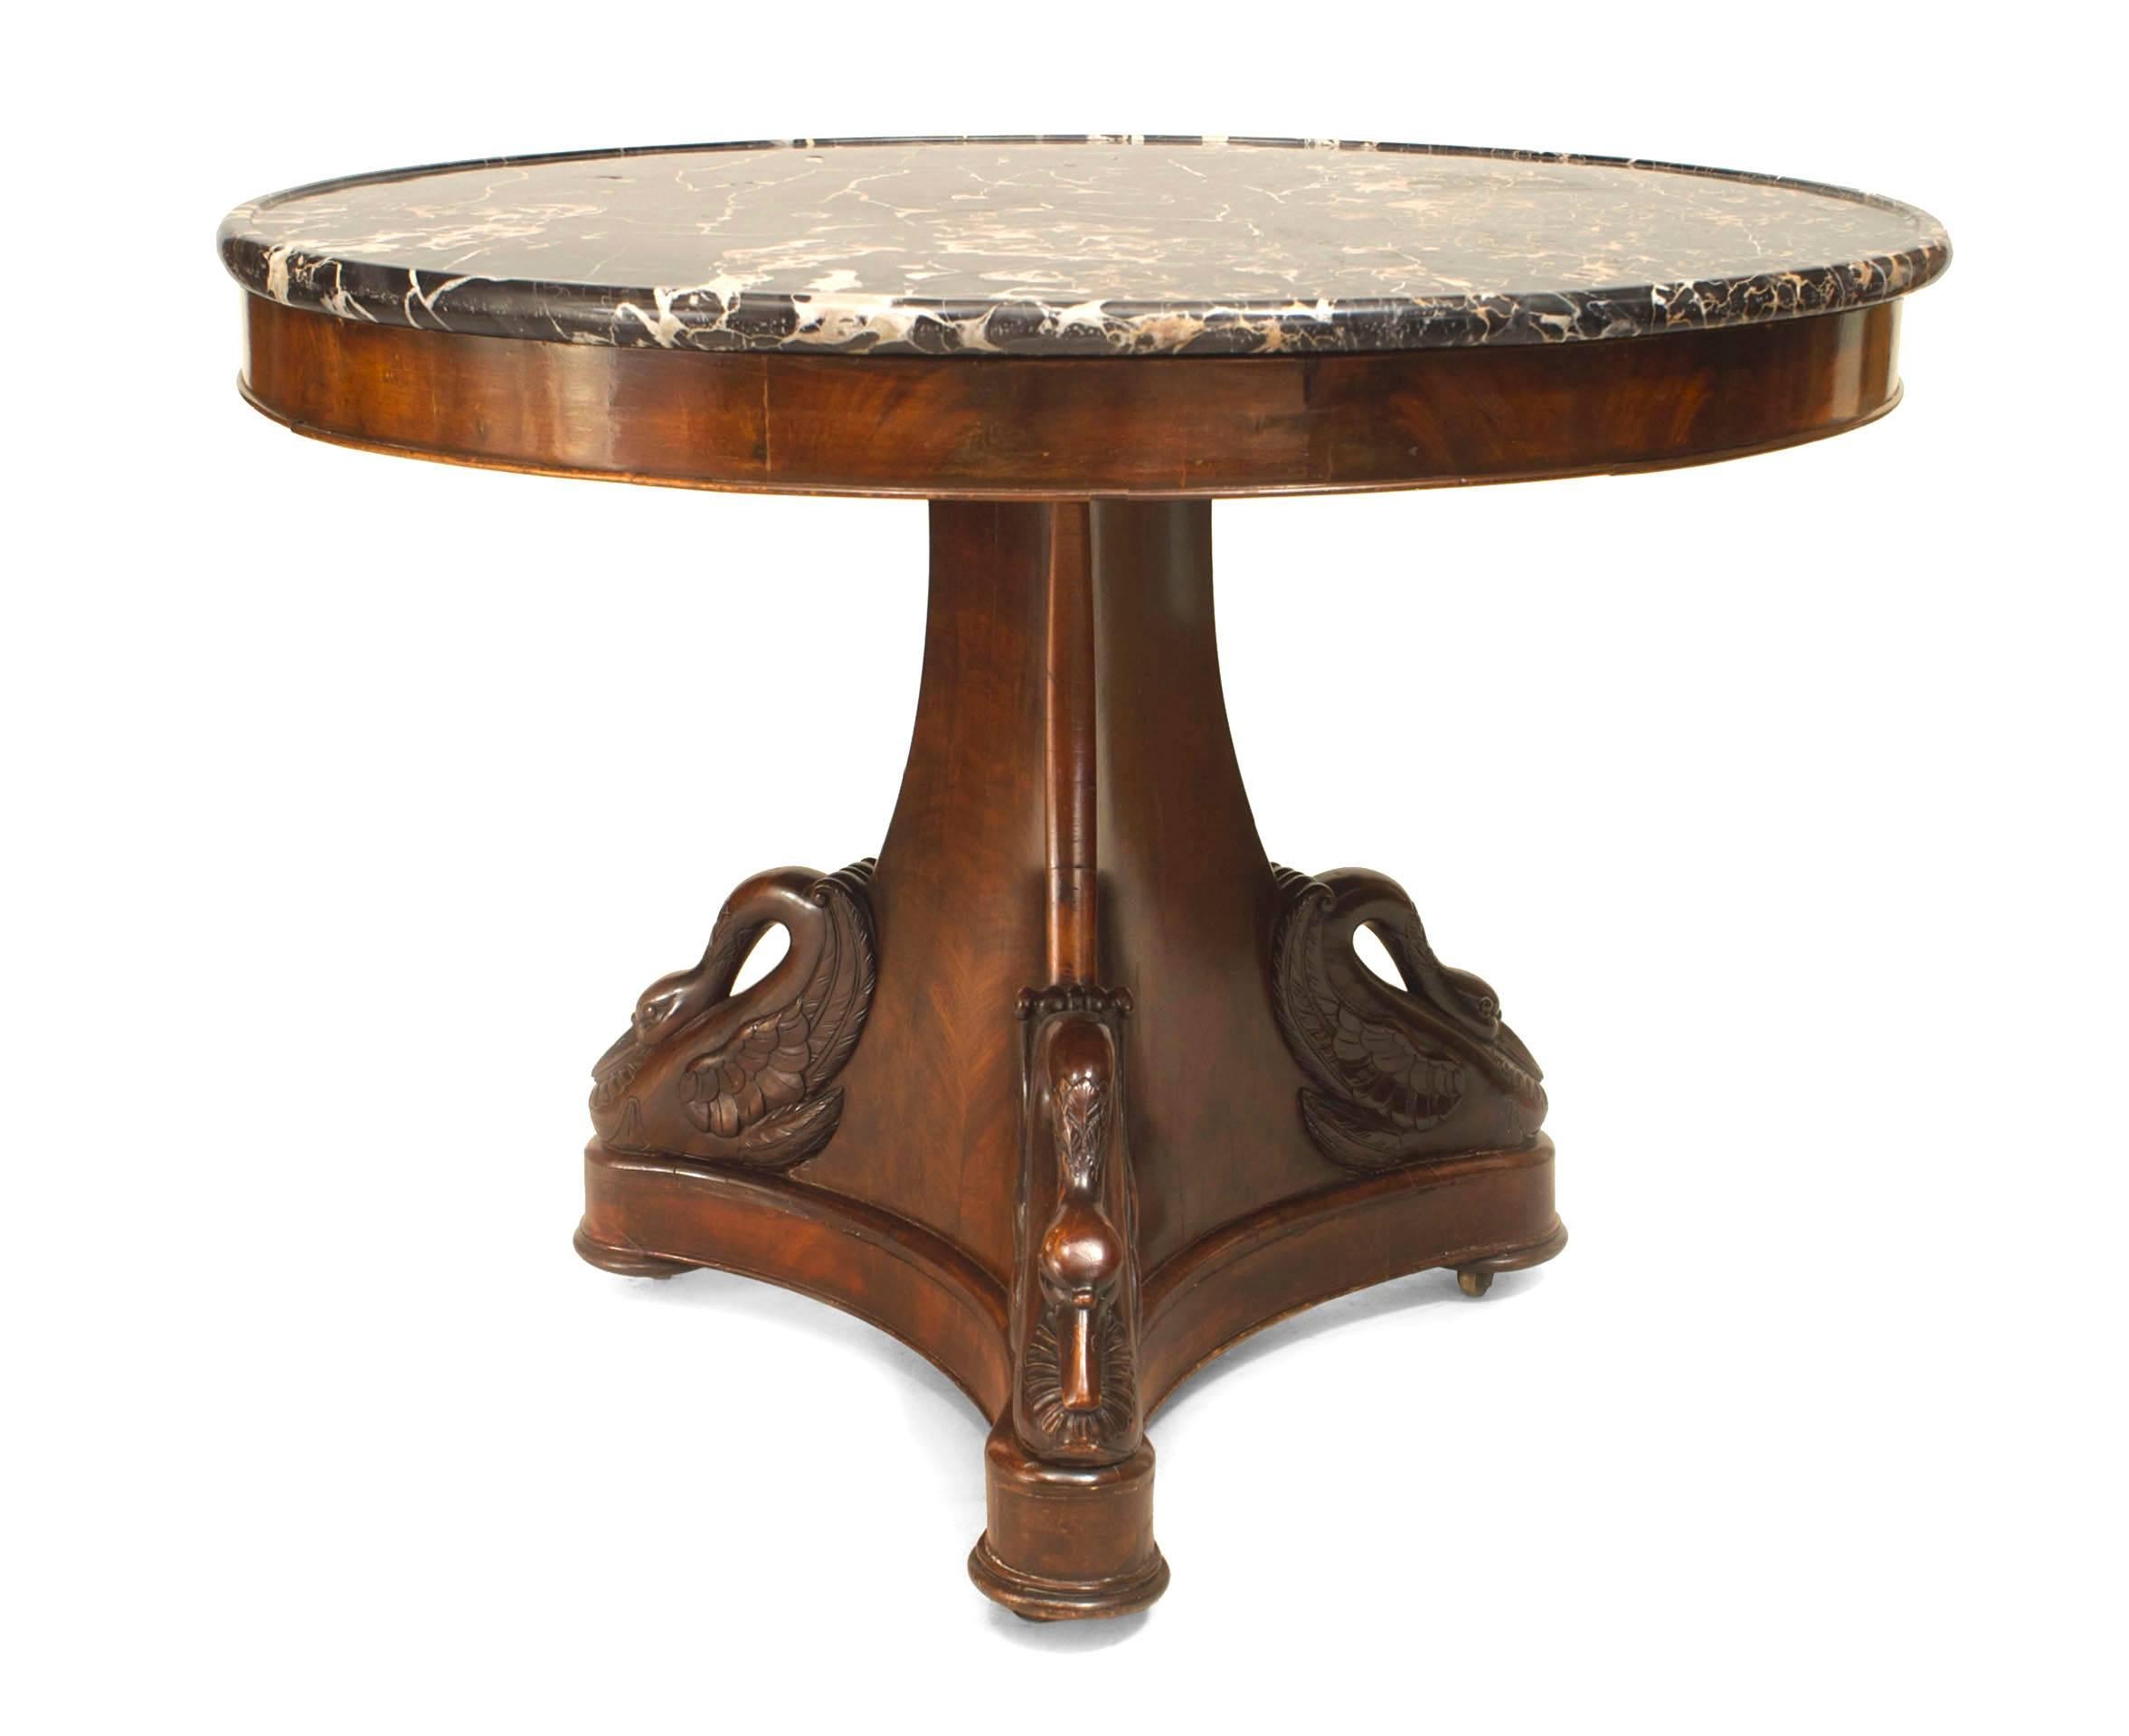 Französischer Empire-Mahagoni-Mitteltisch mit 3 geschnitzten Schwänen auf einem Sockel, der eine runde, schwarz geäderte Platte mit einem geformten Rand trägt.
